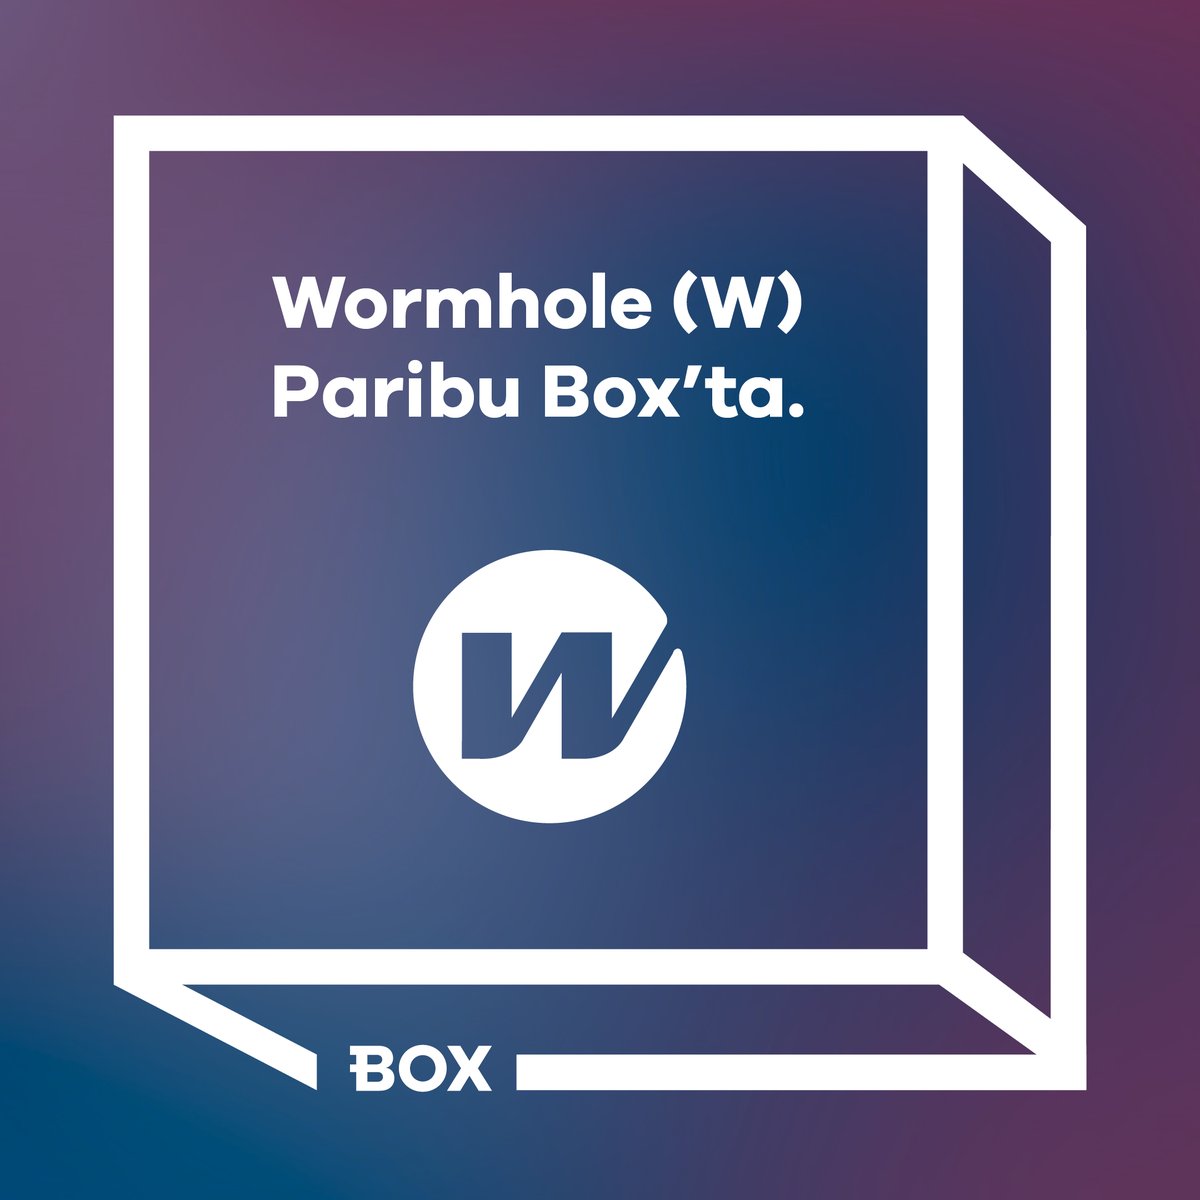 Paribu Box’ta Wormhole (W) yatırma işlemleri başladı. Bugün 15.00 itibarıyla alım satım işlemlerinizi gerçekleştirebilirsiniz. Paribu Box hakkında detaylı bilgi almak için 🔽 paribu.com/blog/haberler/…